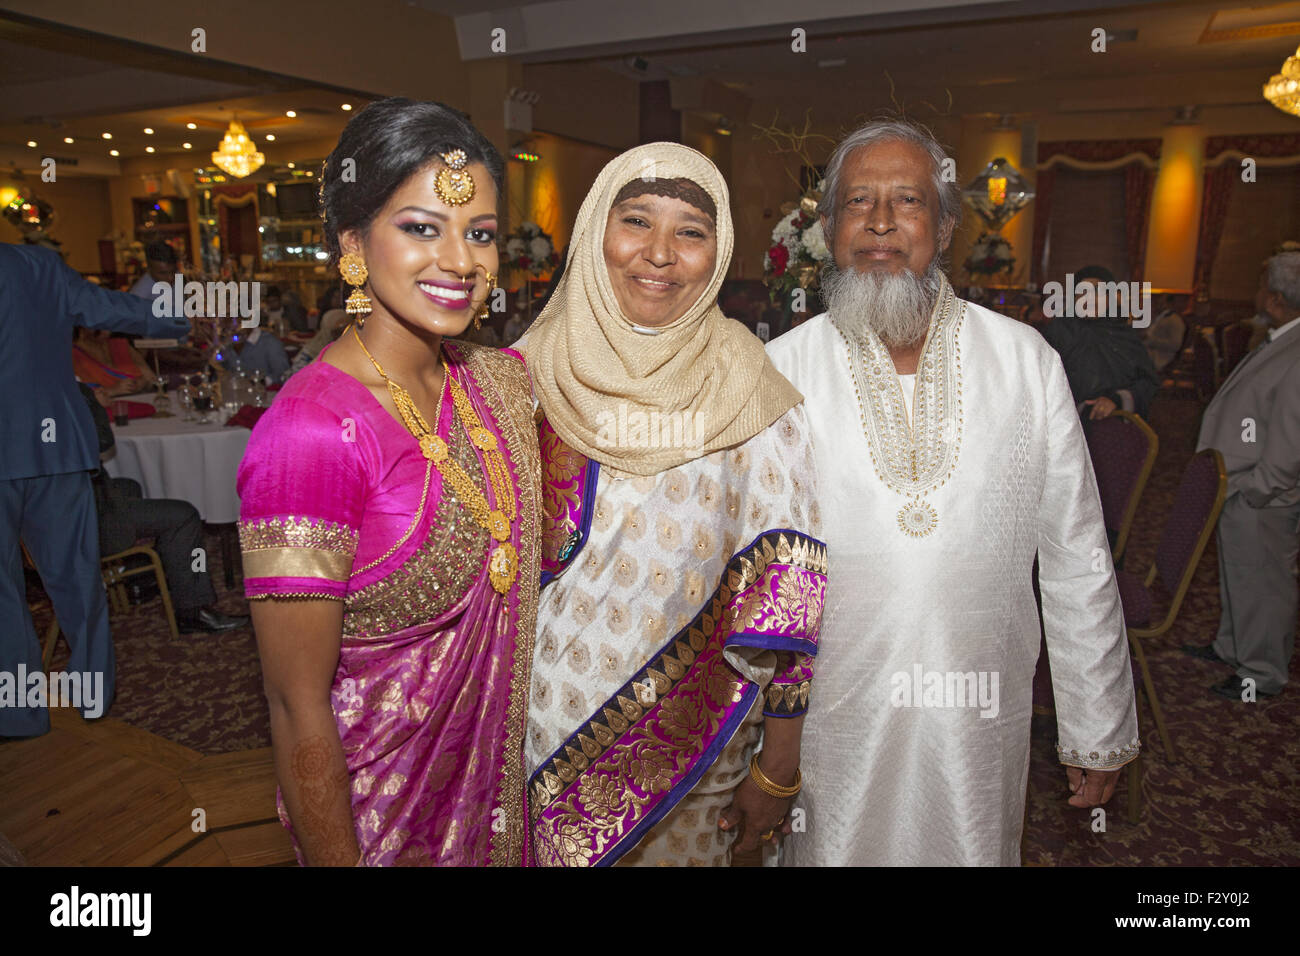 Los invitados a una boda musulmana de Bangladesh, Brooklyn, NY. Foto de stock